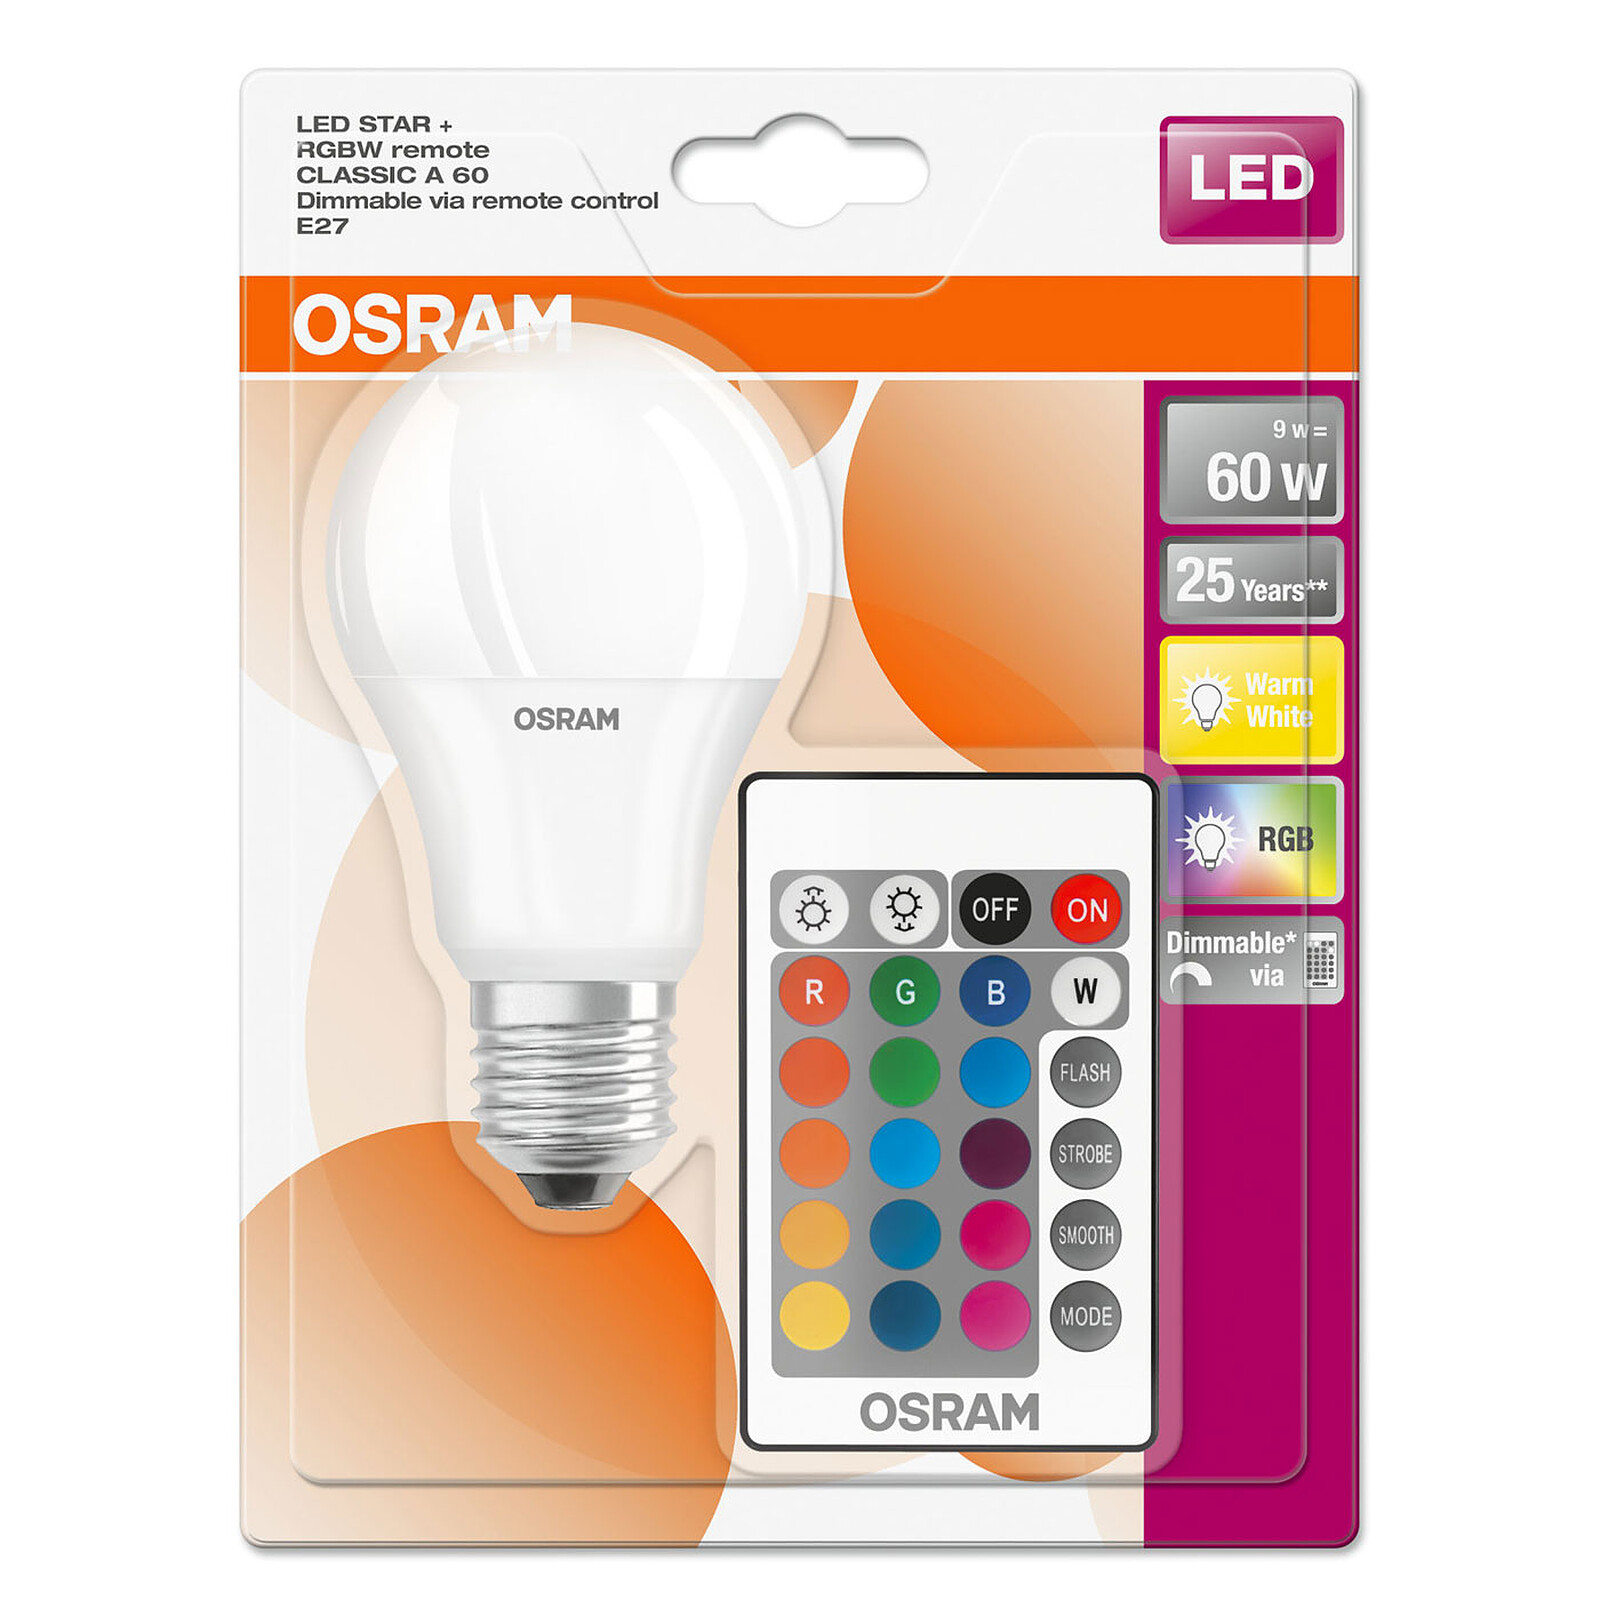 Osram met en lumière ses lampes LED rétrofit